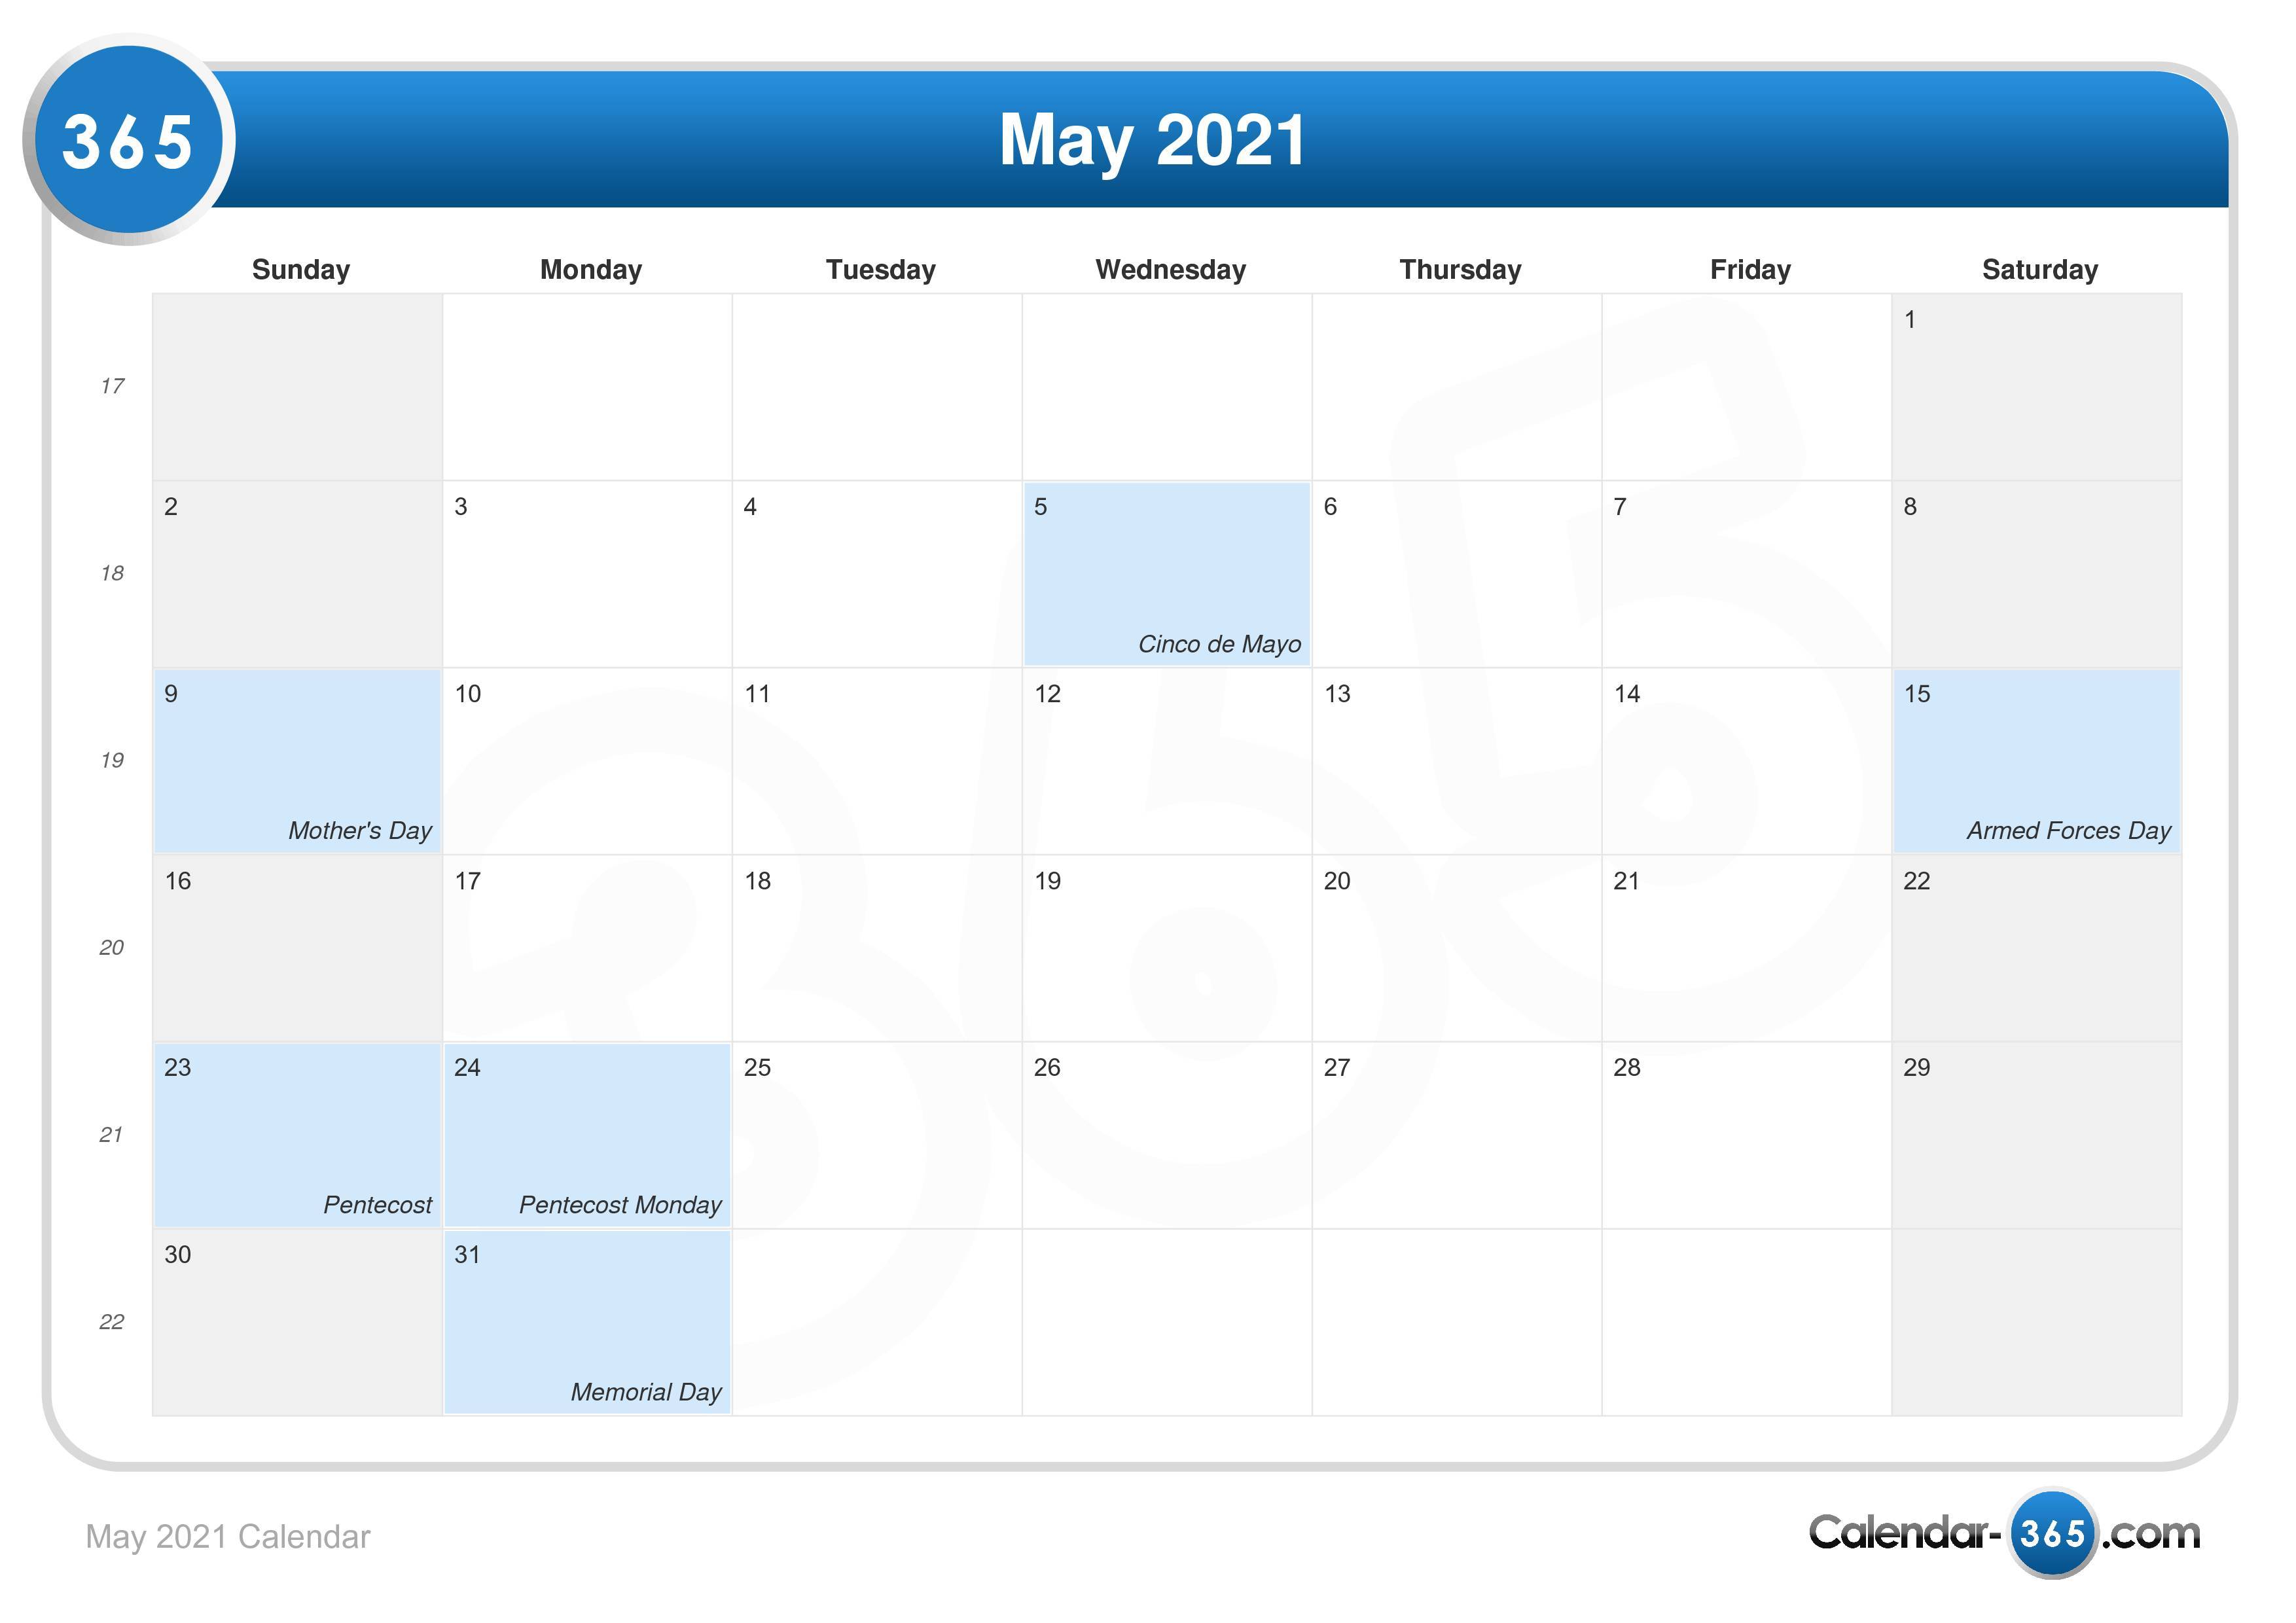 amarillo isd calendar 2021 22 May 2021 Calendar amarillo isd calendar 2021 22